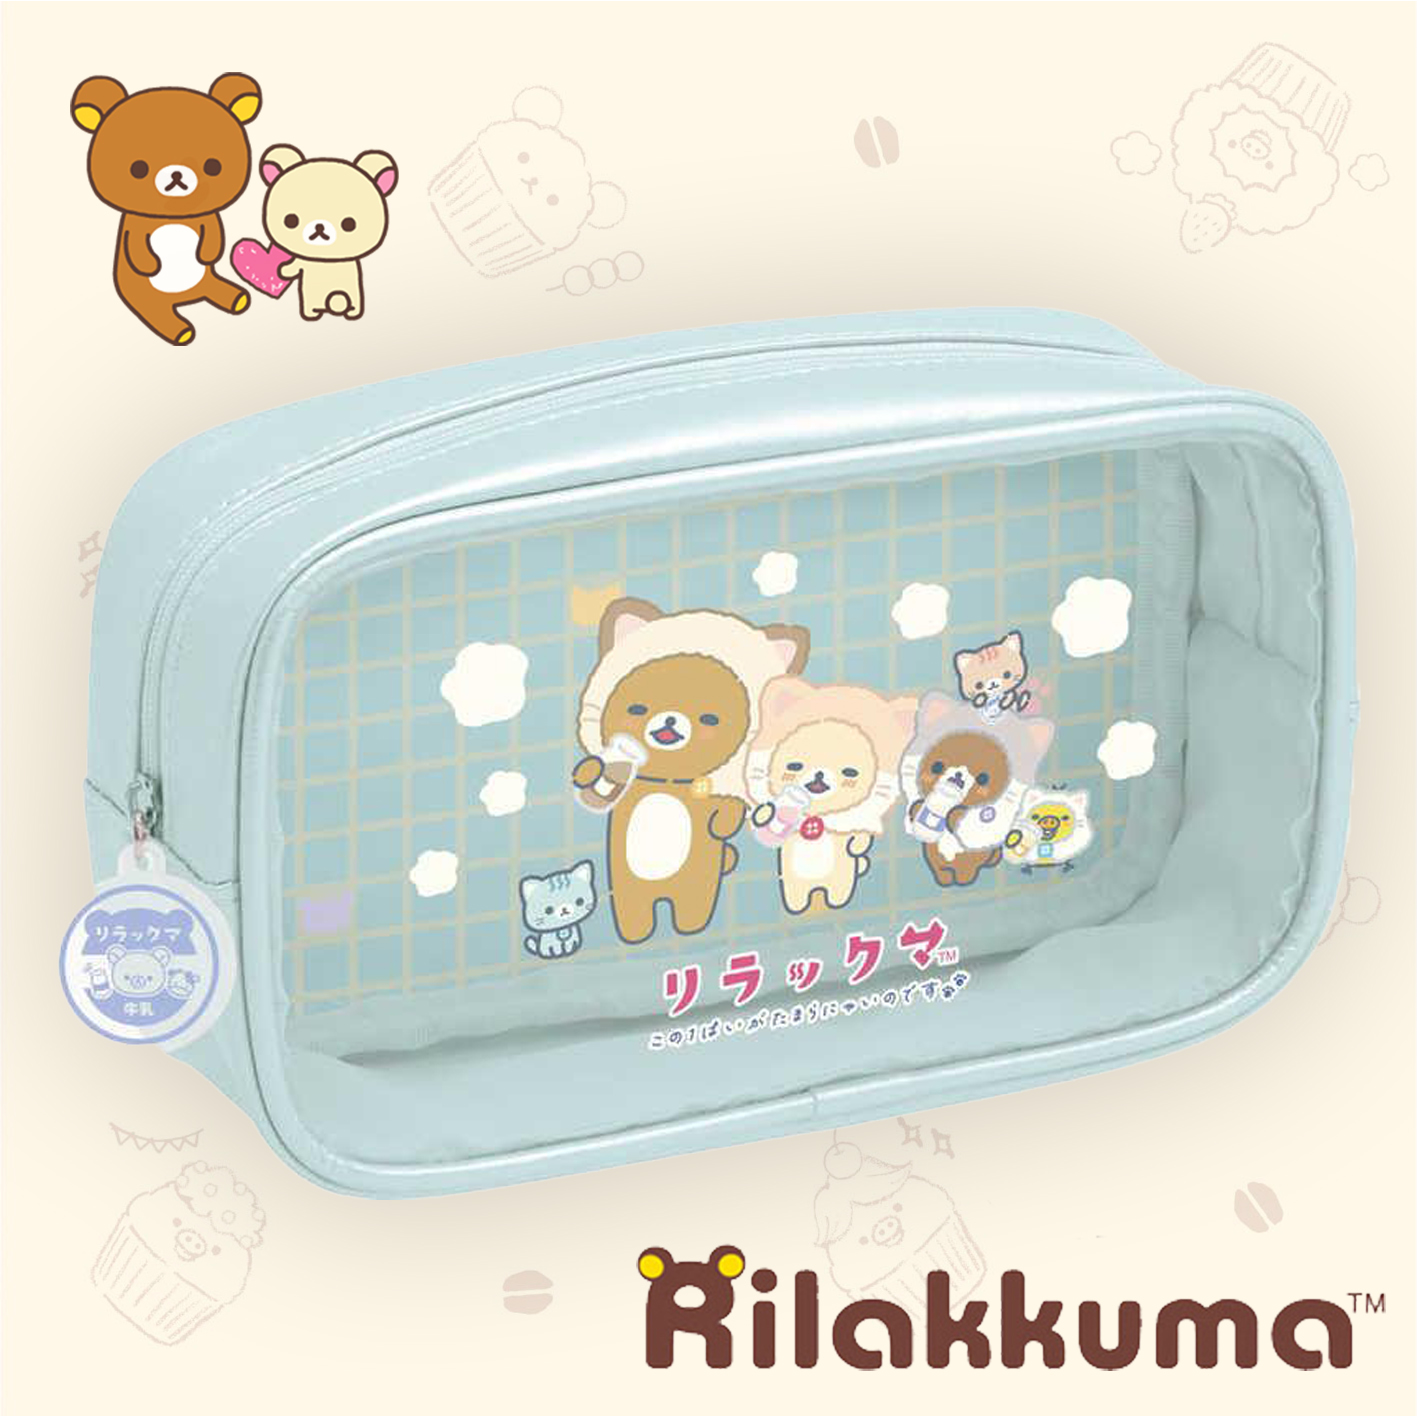 澡堂系列筆袋-拉拉熊 Rilakkuma san-x 日本進口正版授權